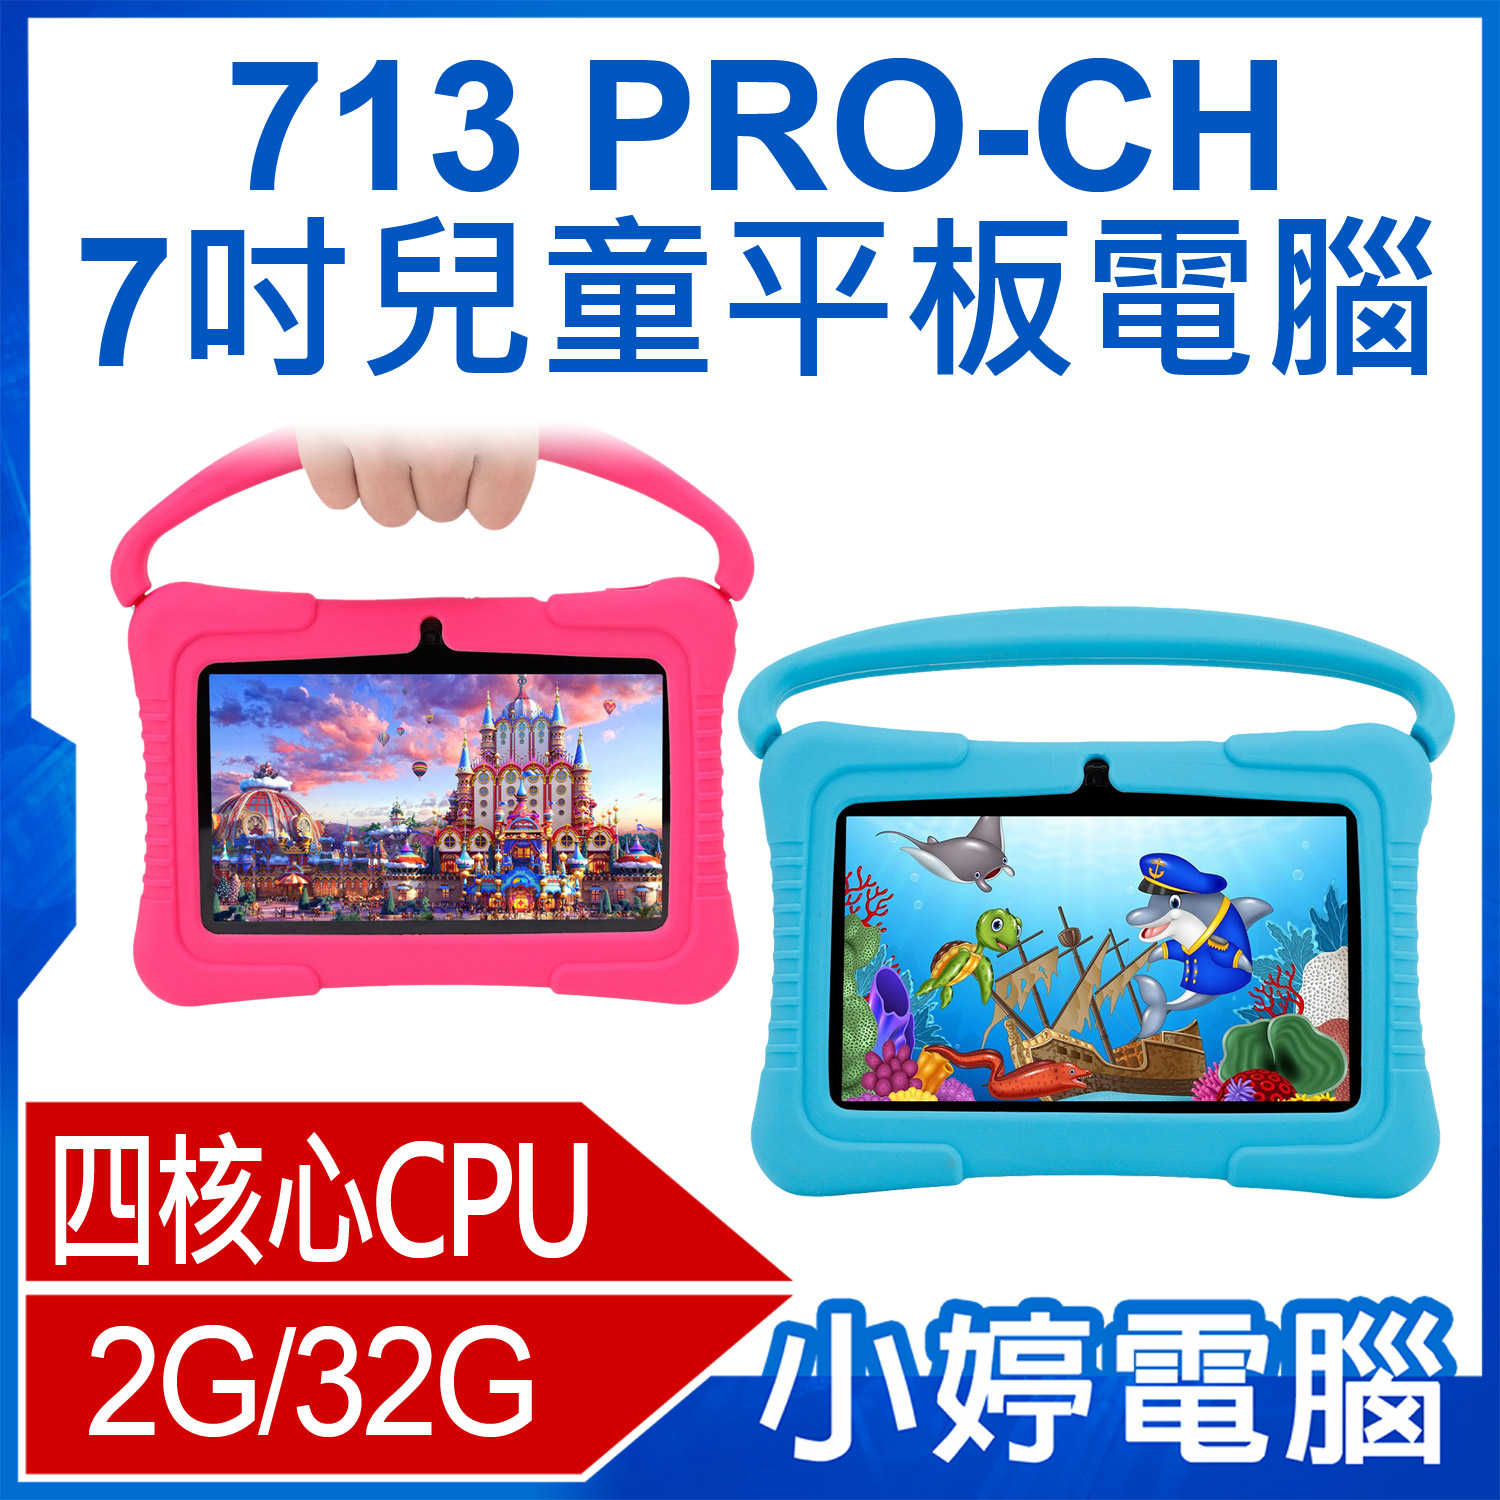 【小婷電腦】713 PRO-CH 7吋兒童平板電腦 四核心 2G/32G 無線上網 家長控管 IPS面板